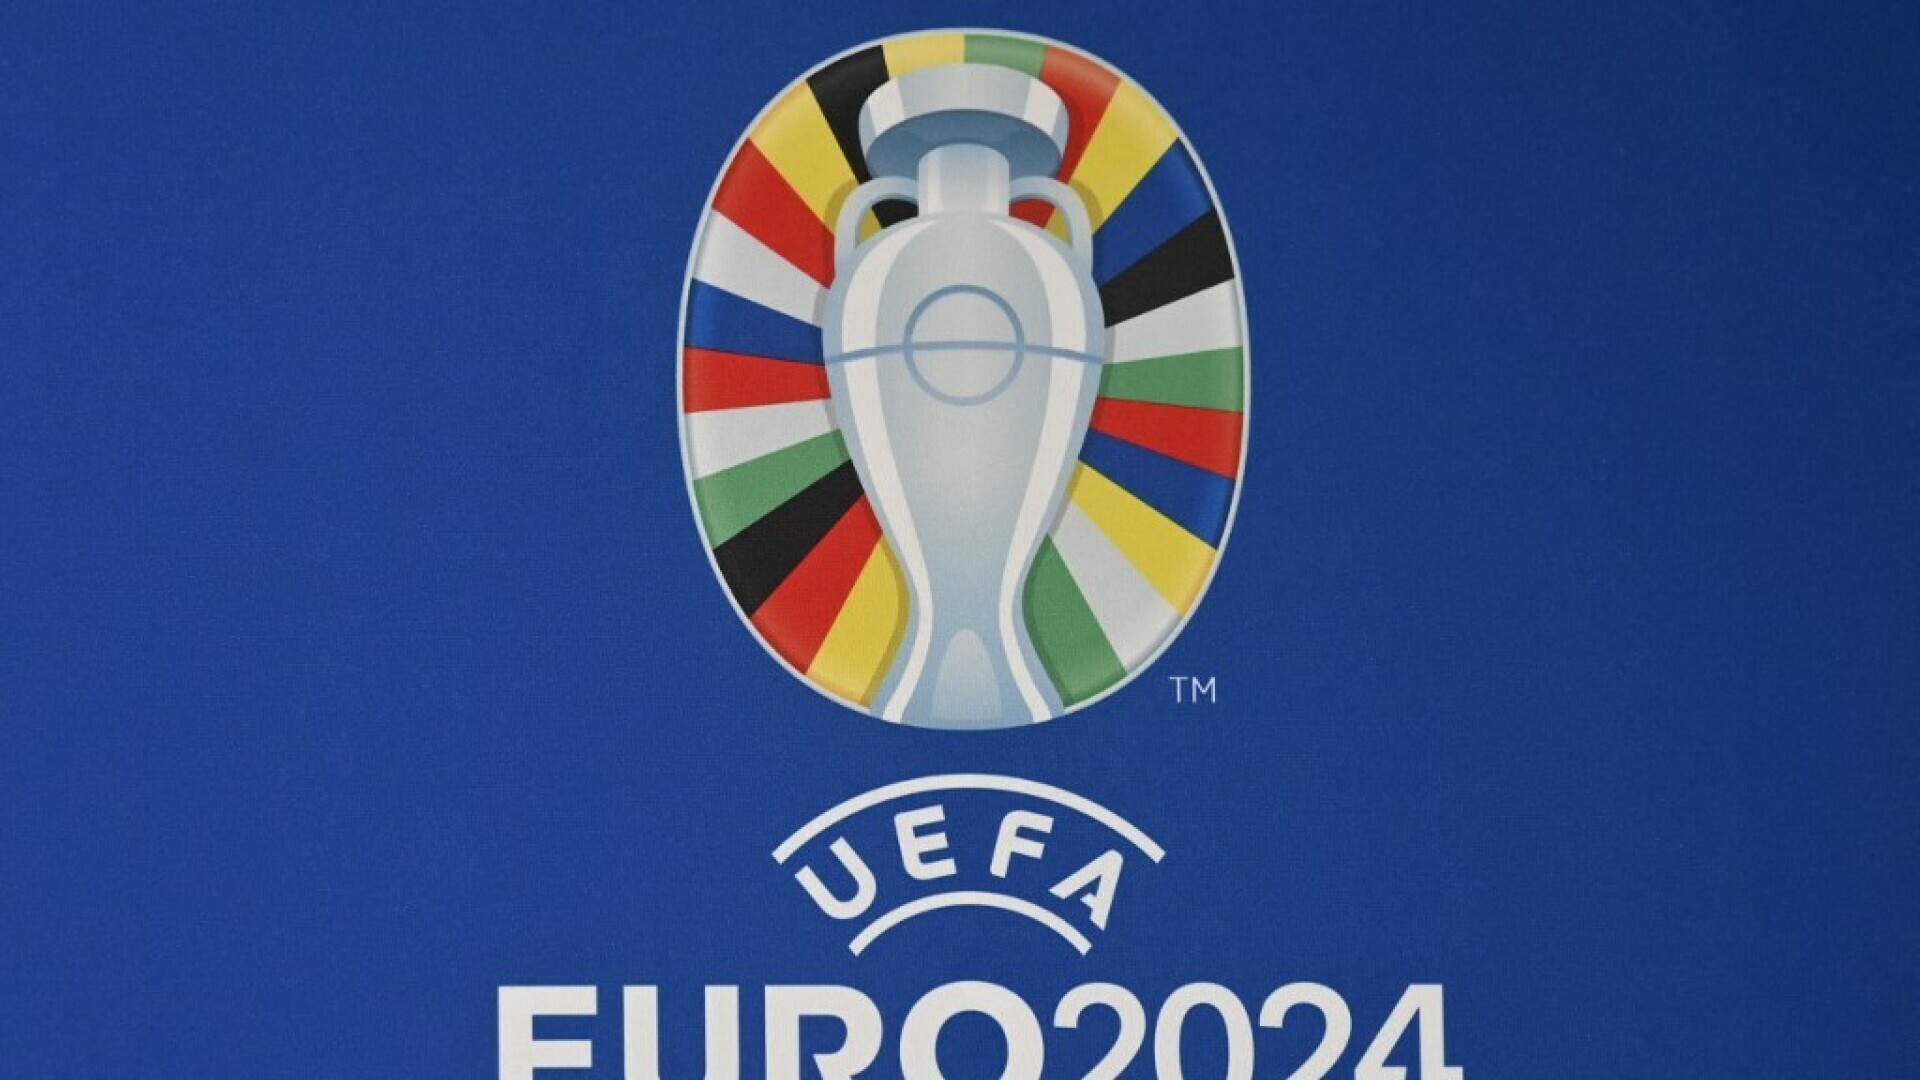 Požega.eu | Kolike su šanse Hrvatske na kvalifikacijama za<br>Euro 2024.?